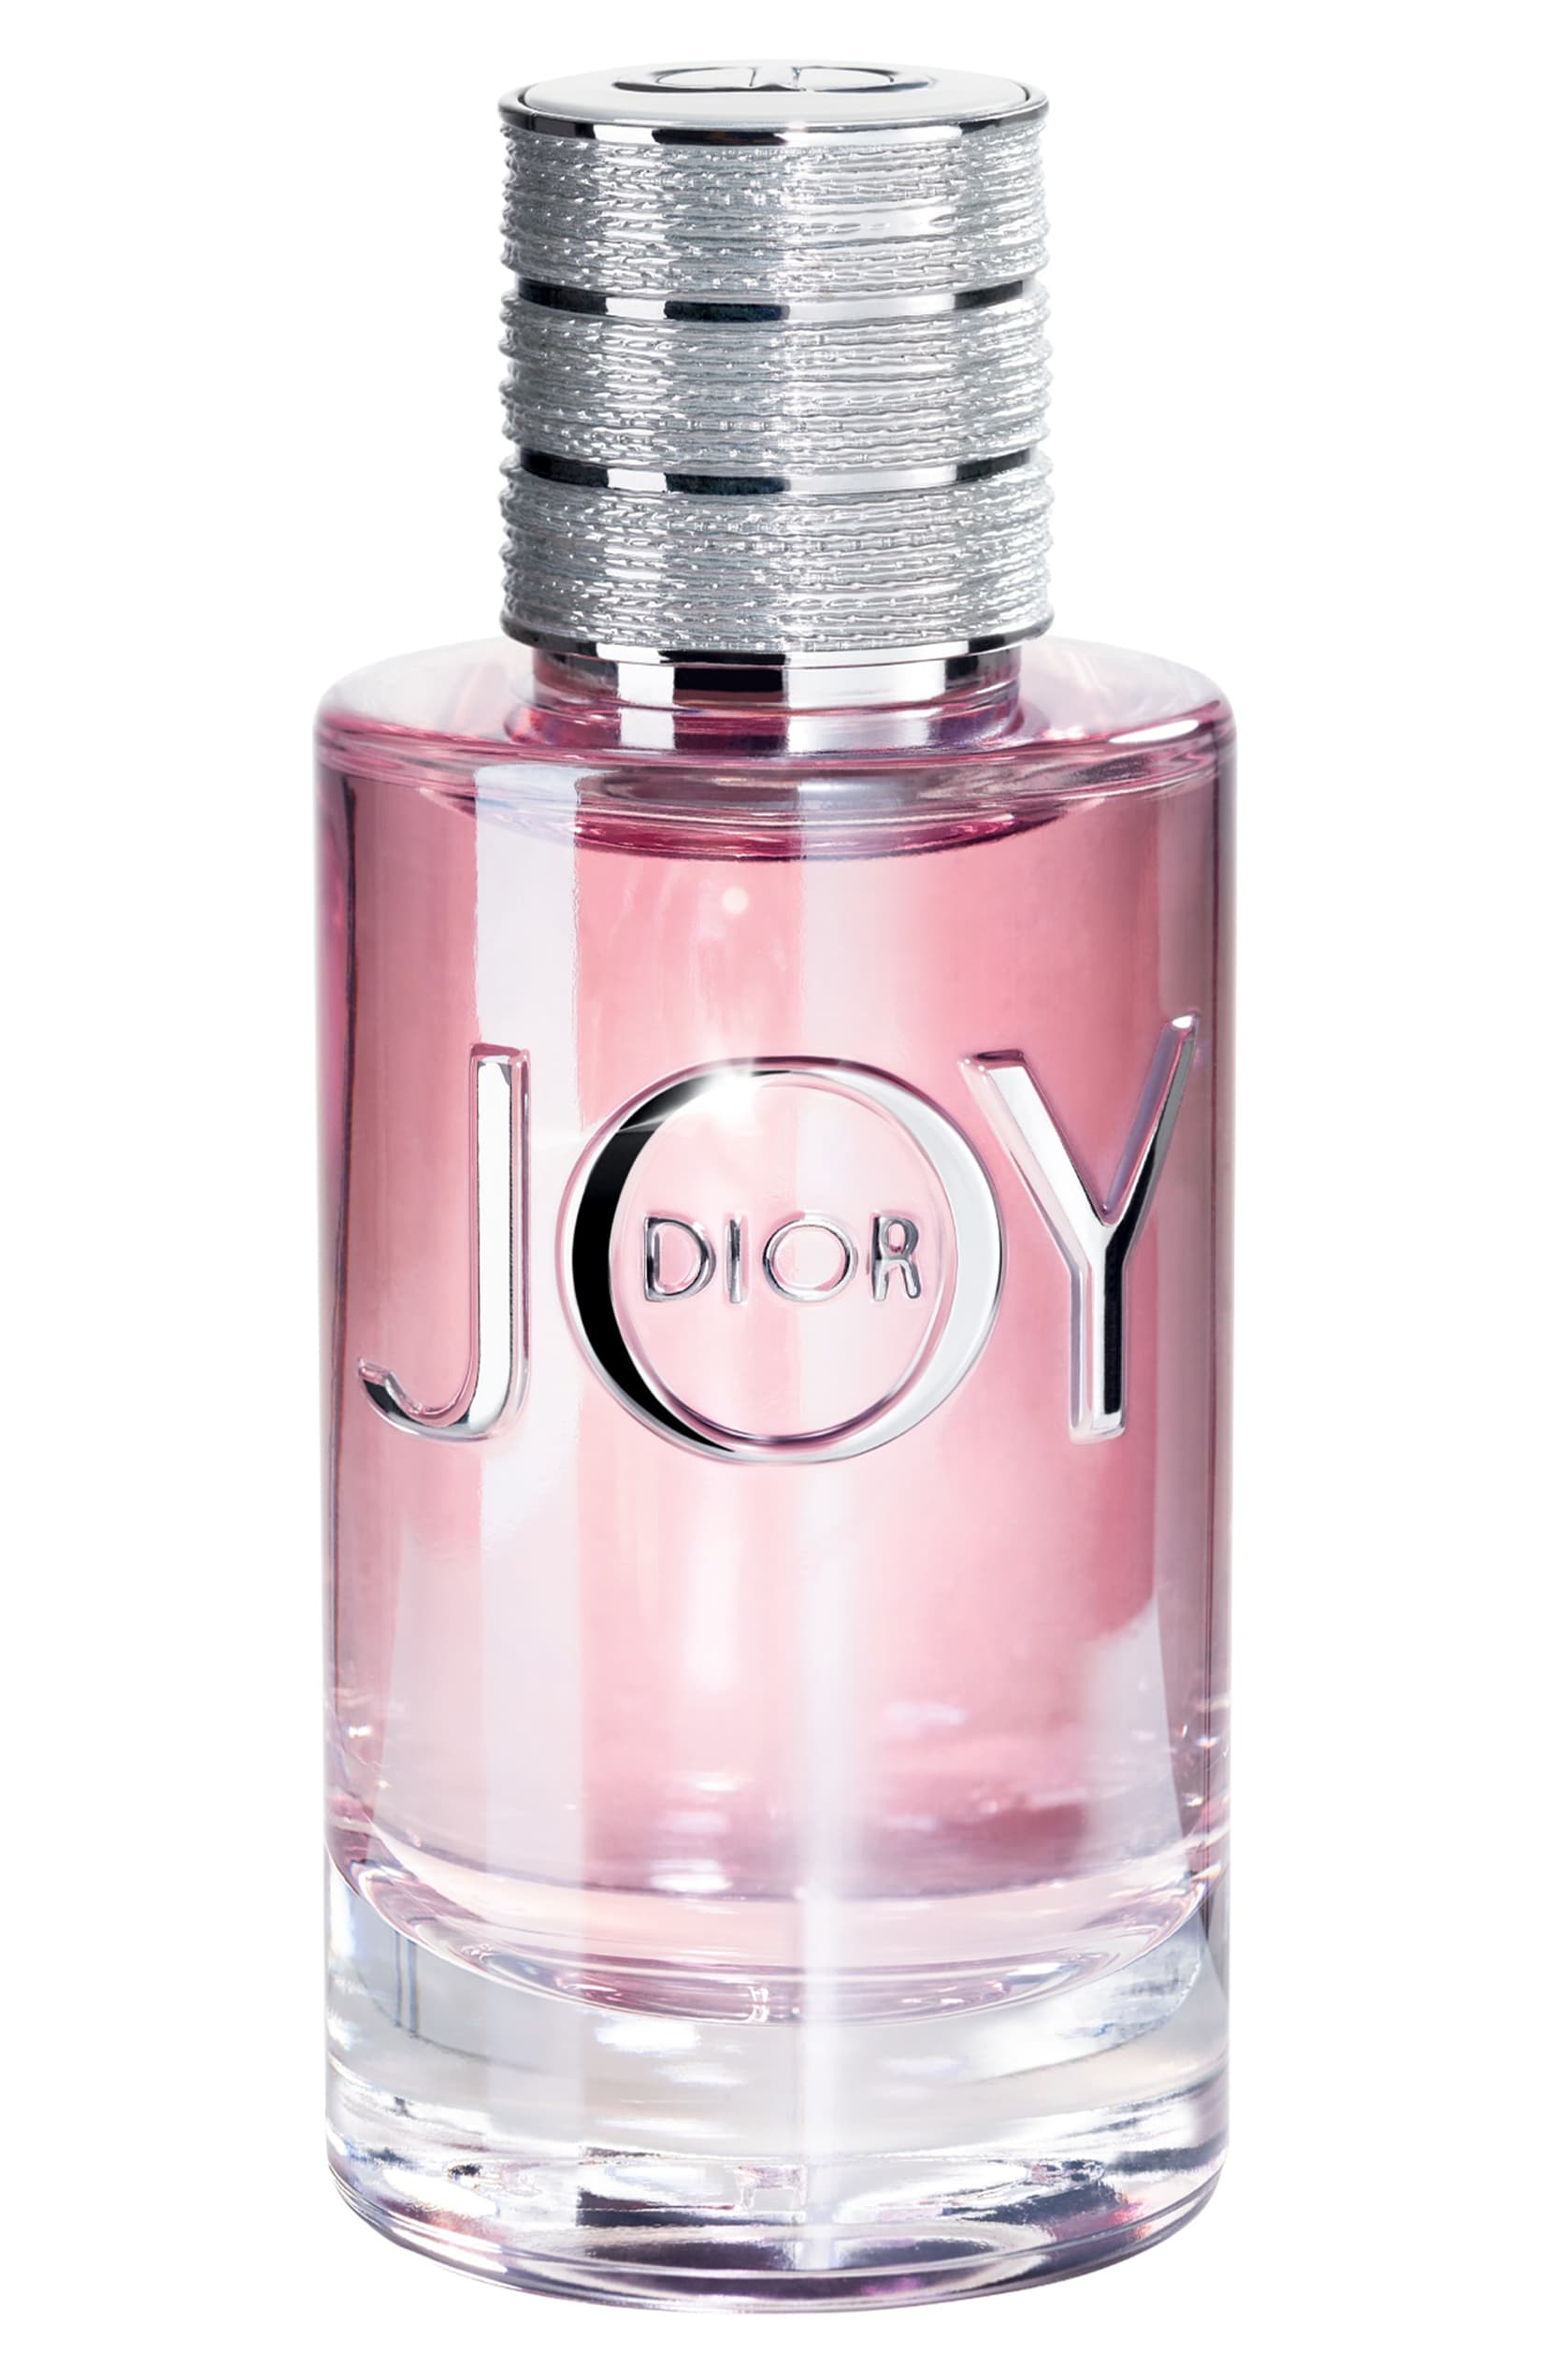 Dior JOY By Dior Eau de Parfum Spray - eCosmeticWorld